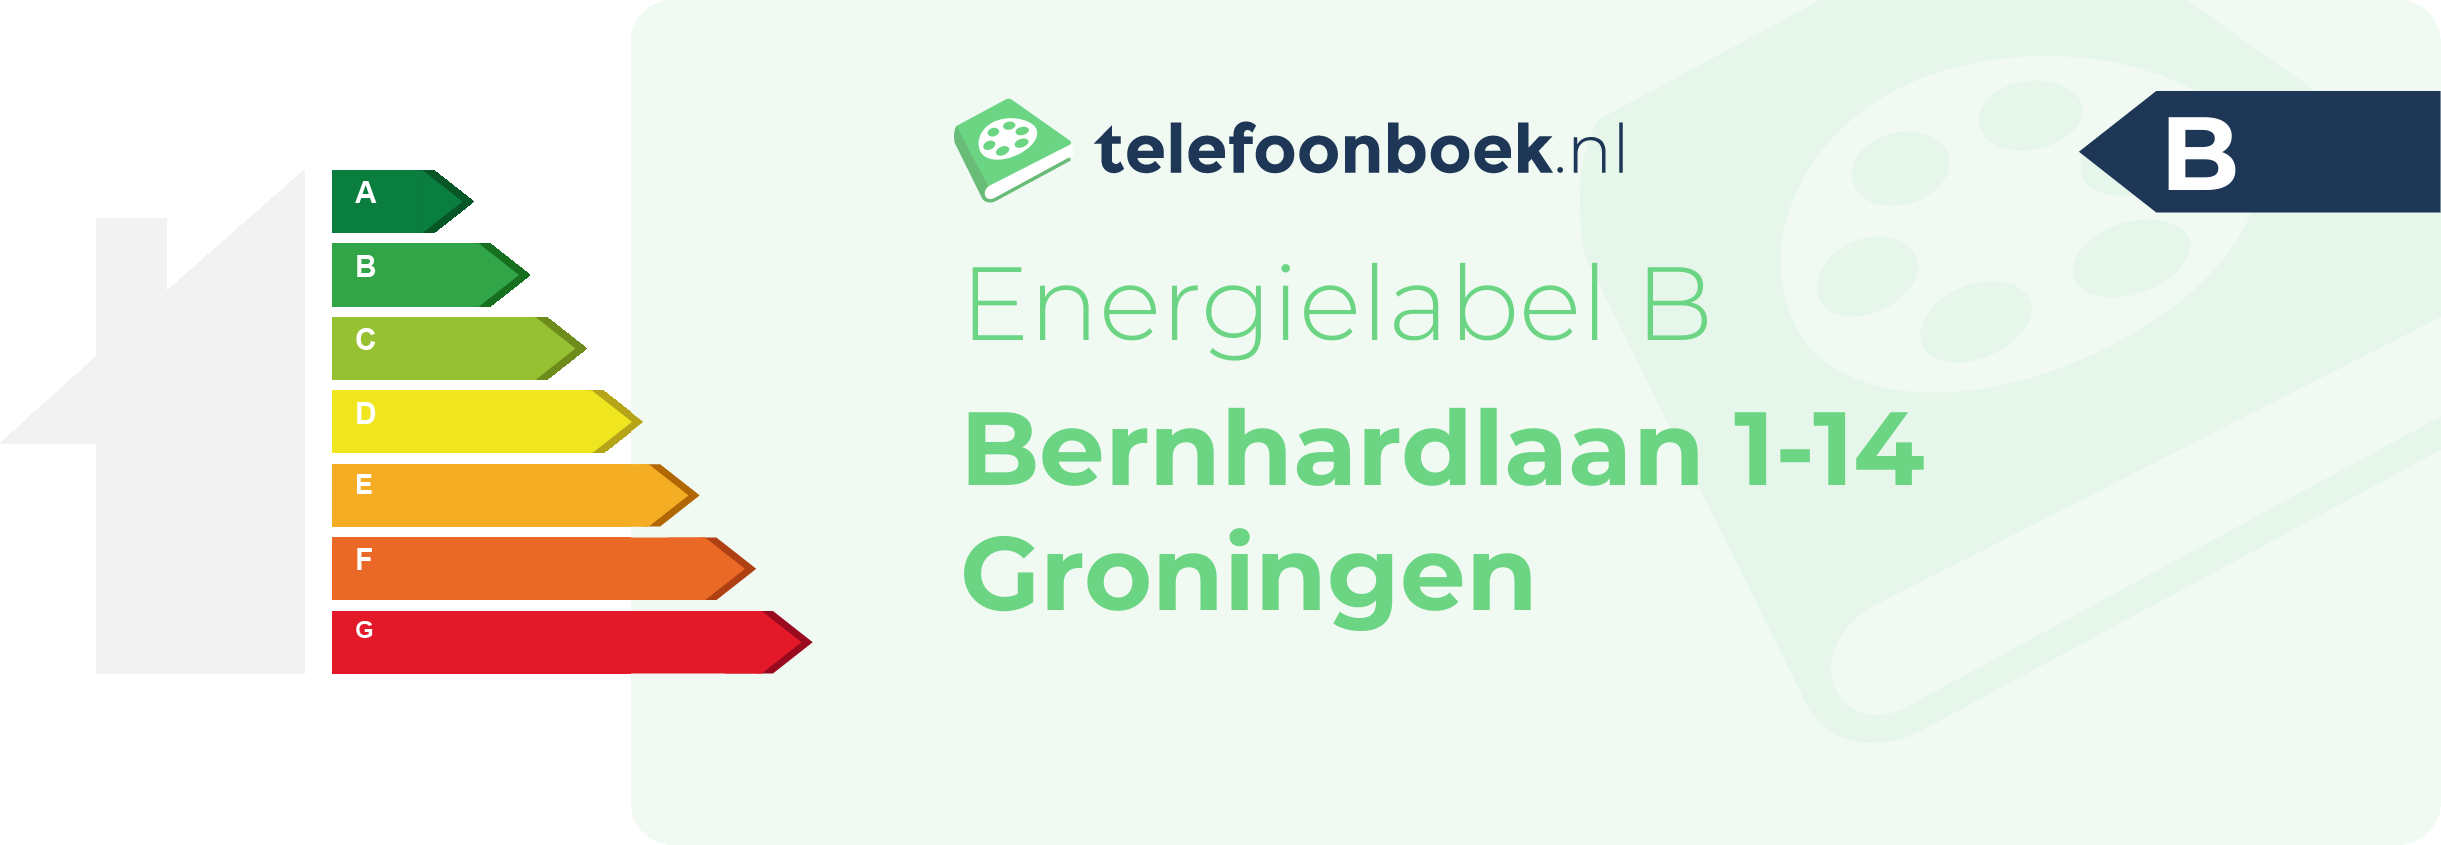 Energielabel Bernhardlaan 1-14 Groningen